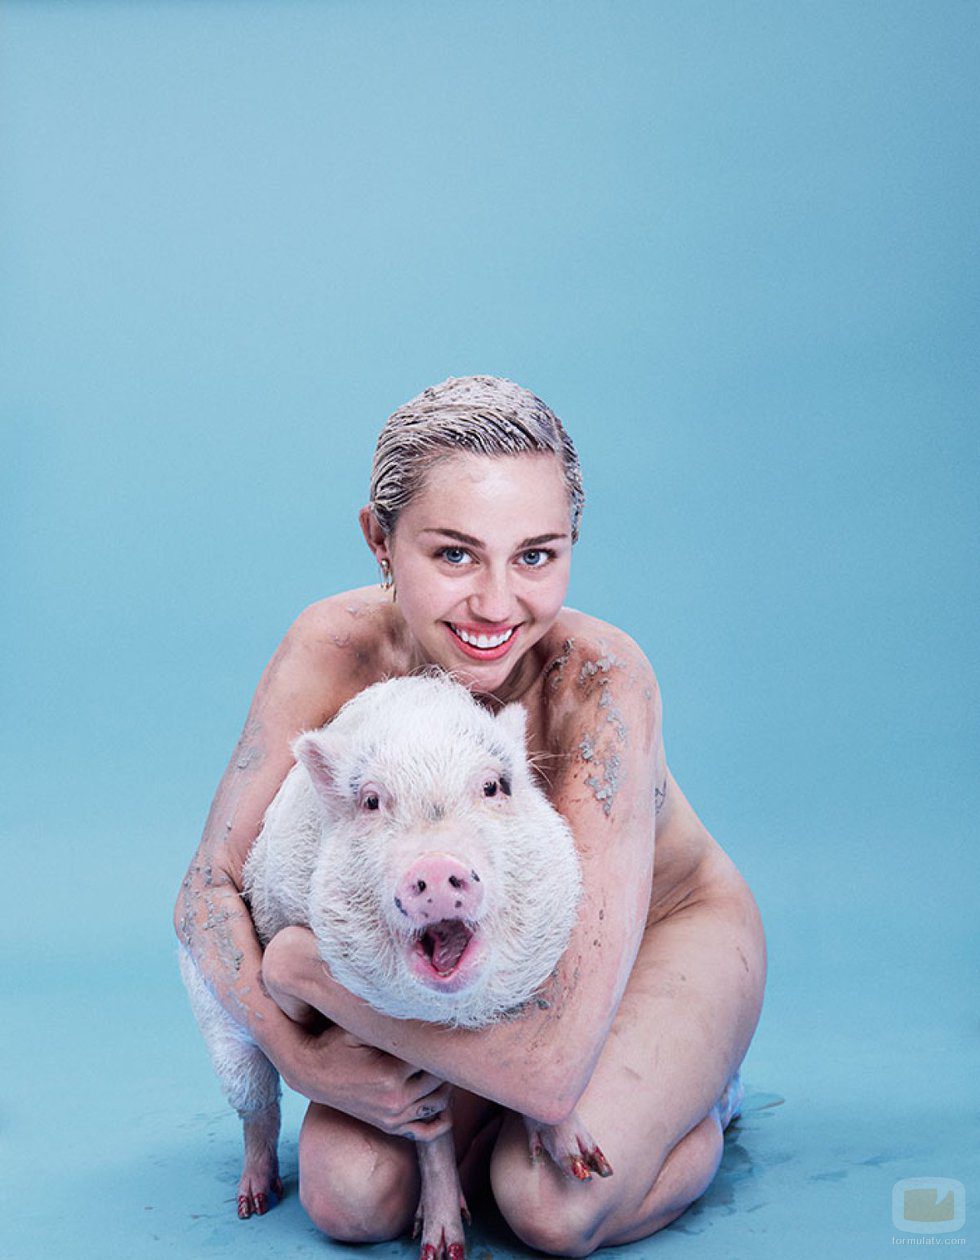 Miley Cyrus posa desnuda con su cerda y confiesa que es bisexual 46835_miley-cyrus-desnuda-cerda-revista-paper